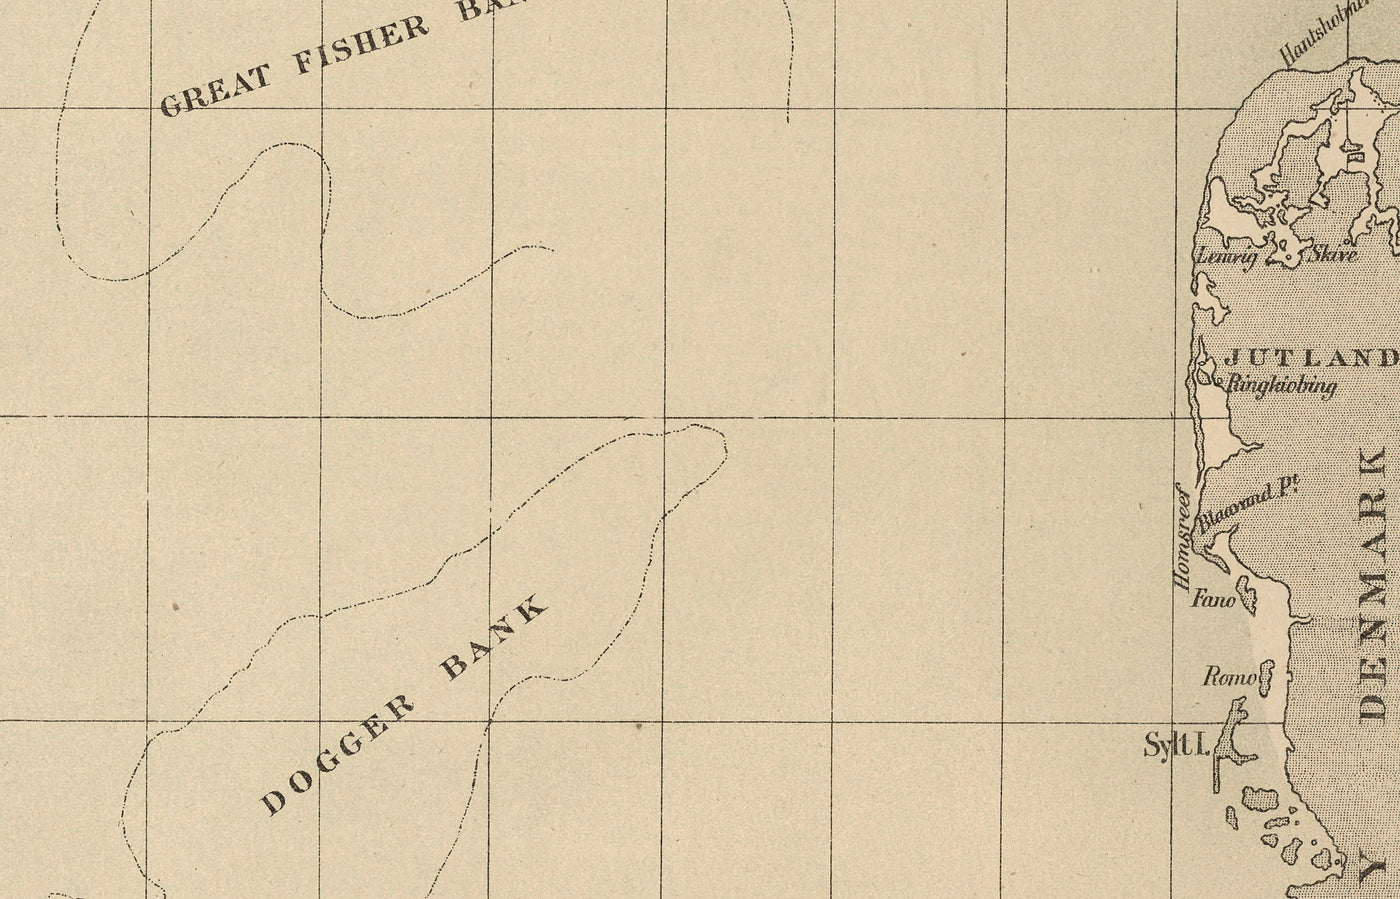 Antiguo mapa del bacalao del Mar del Norte, 1883 por O.T. Olsen - Pesca del bacalao, distribución, desove, etc.